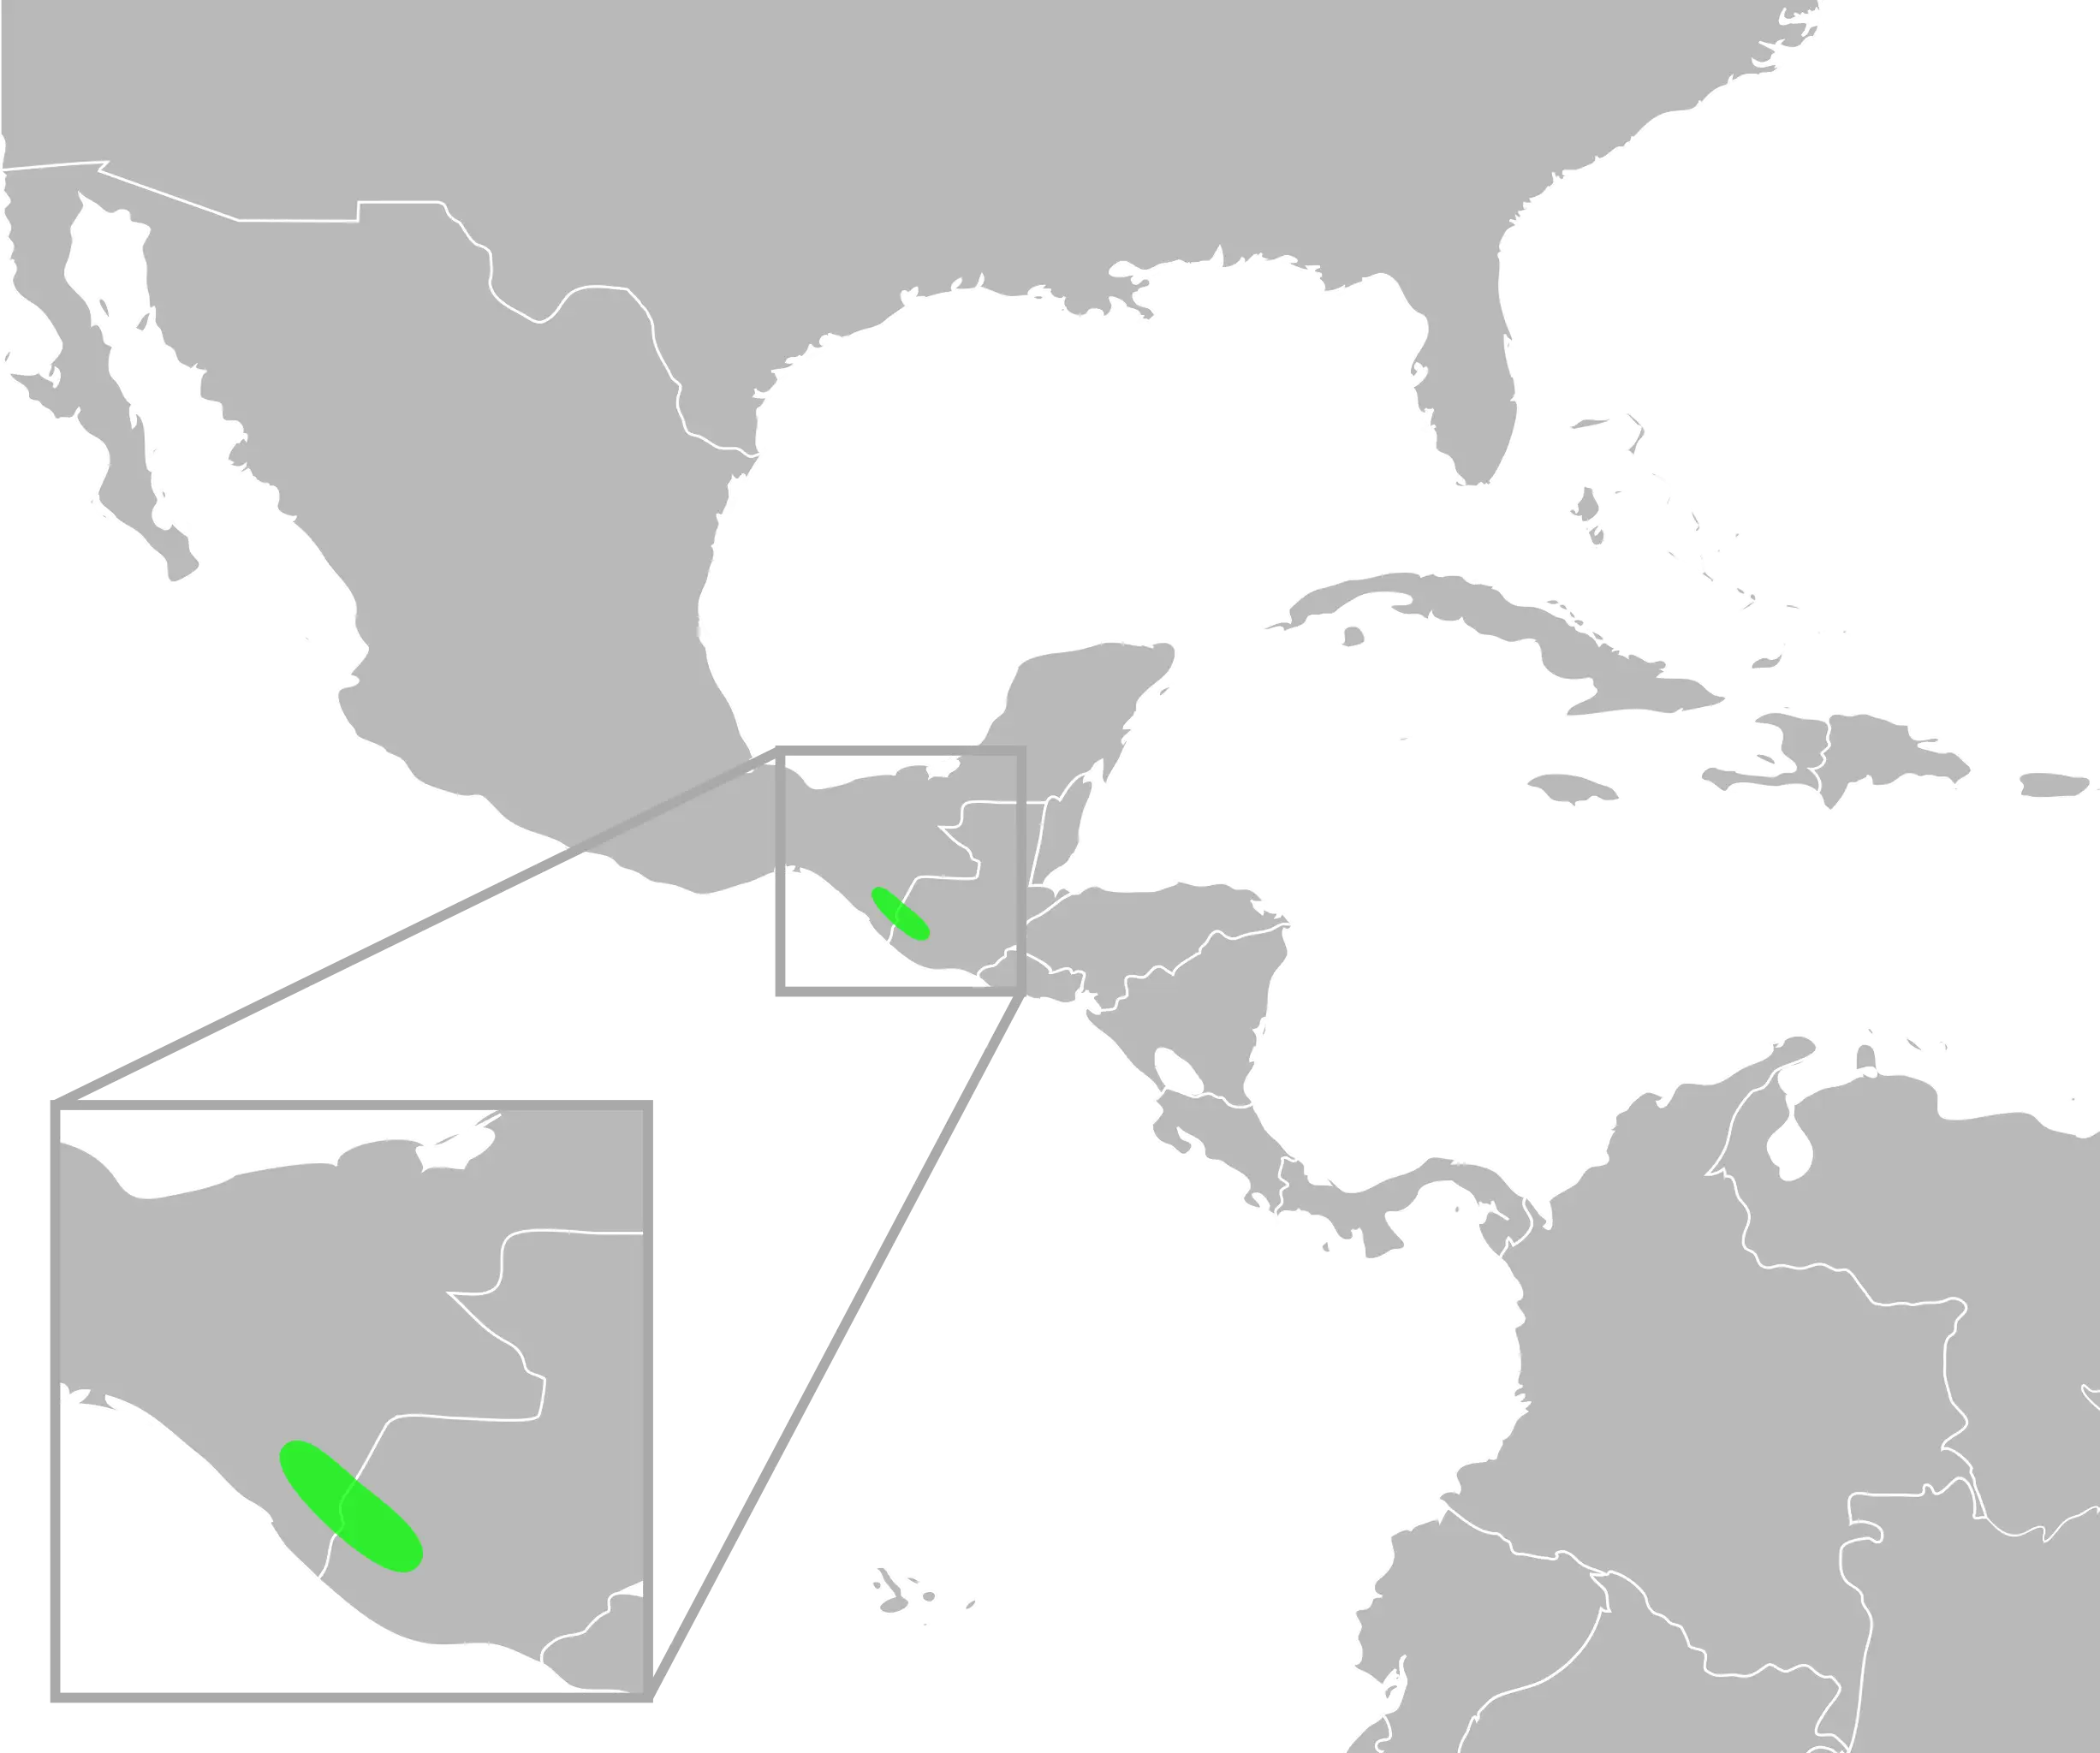 Incilius tacanensis habitat map